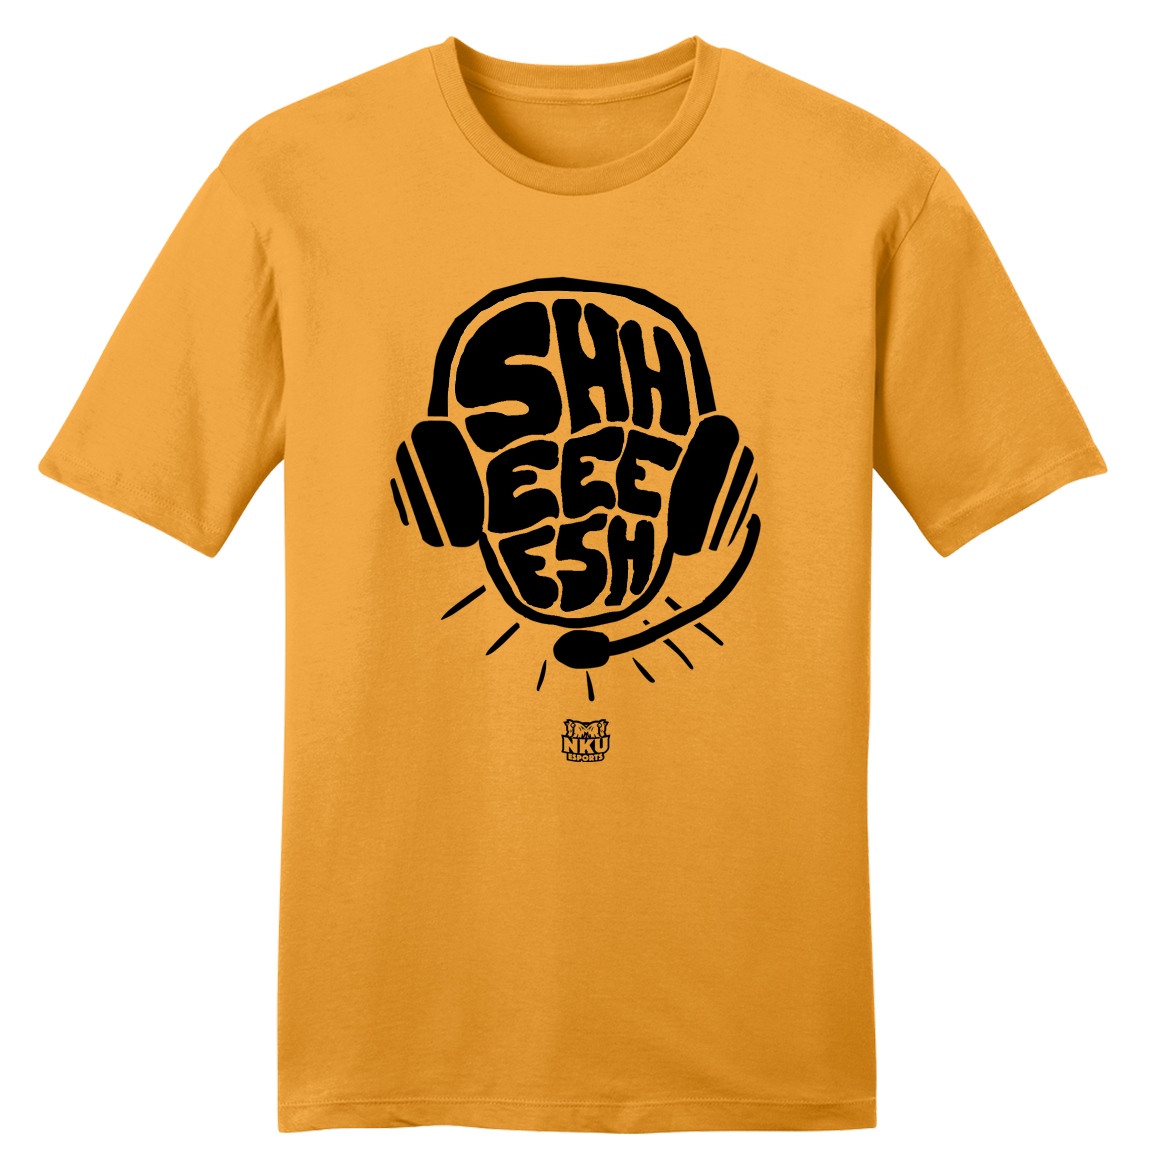 NKU Esports Sheesh! - Cincy Shirts